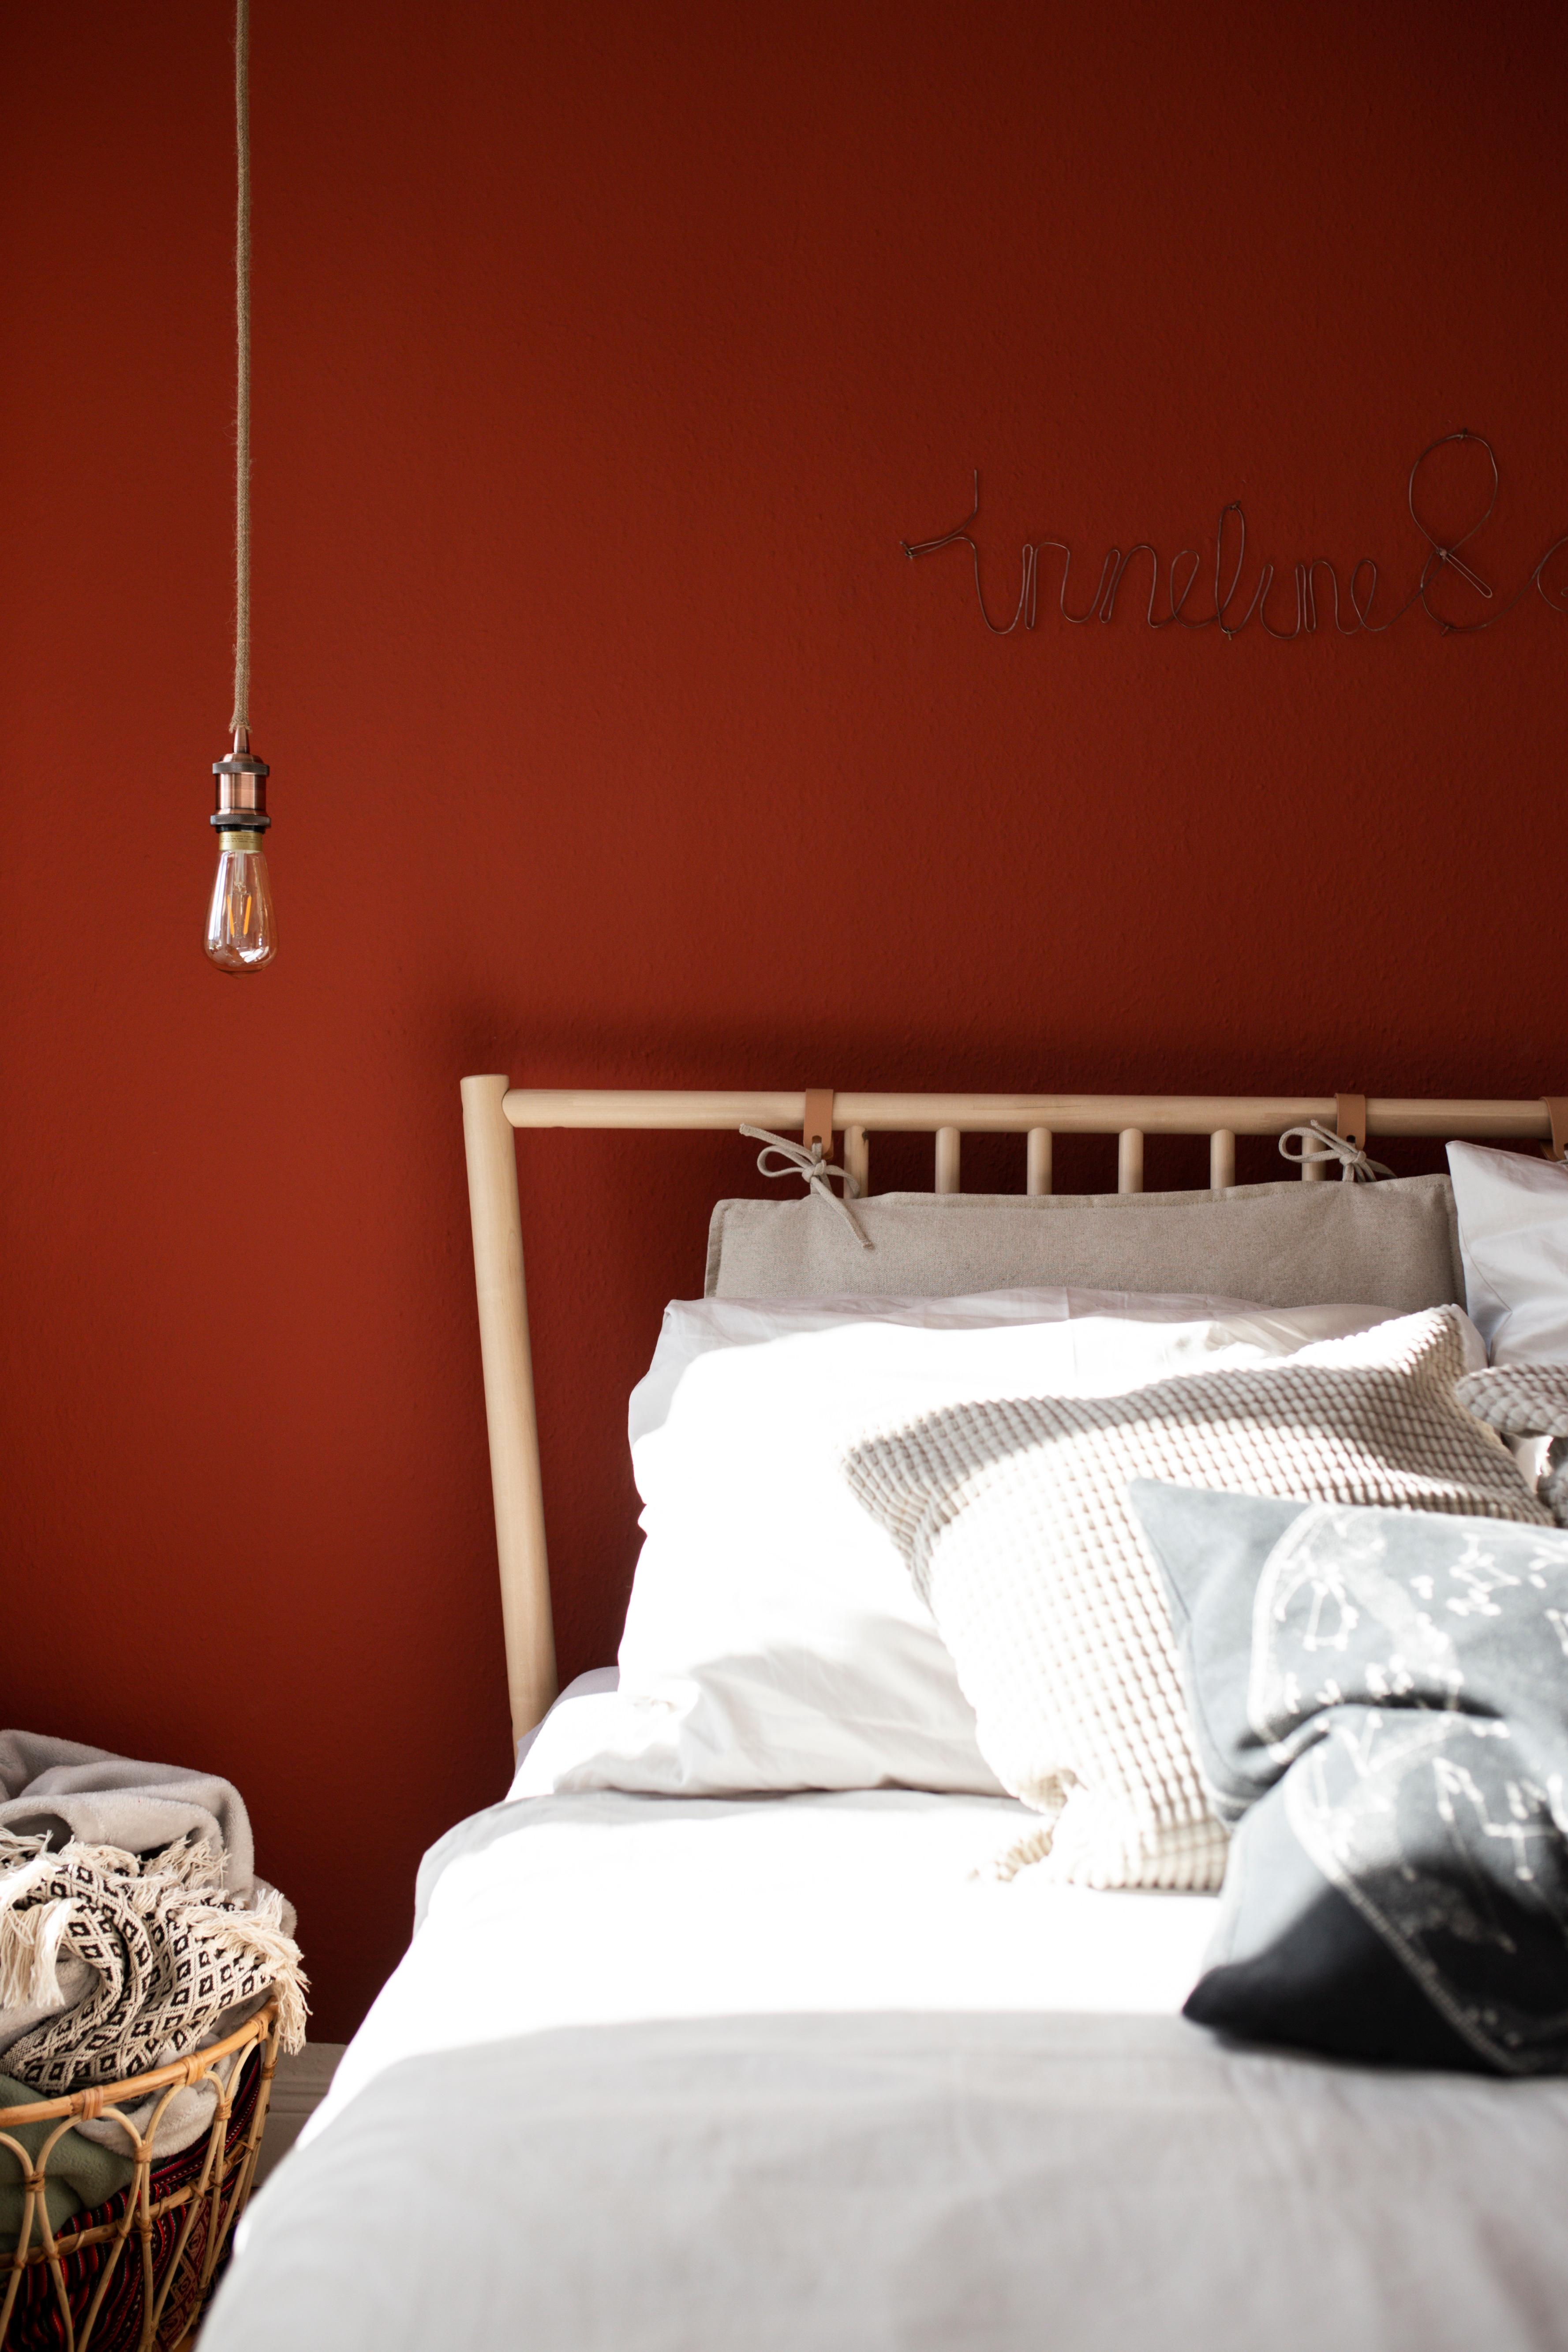 Cozy Bedroom #schlafzimmer #interior #einrichtung #kissen #lampe #gemütlich #hygge